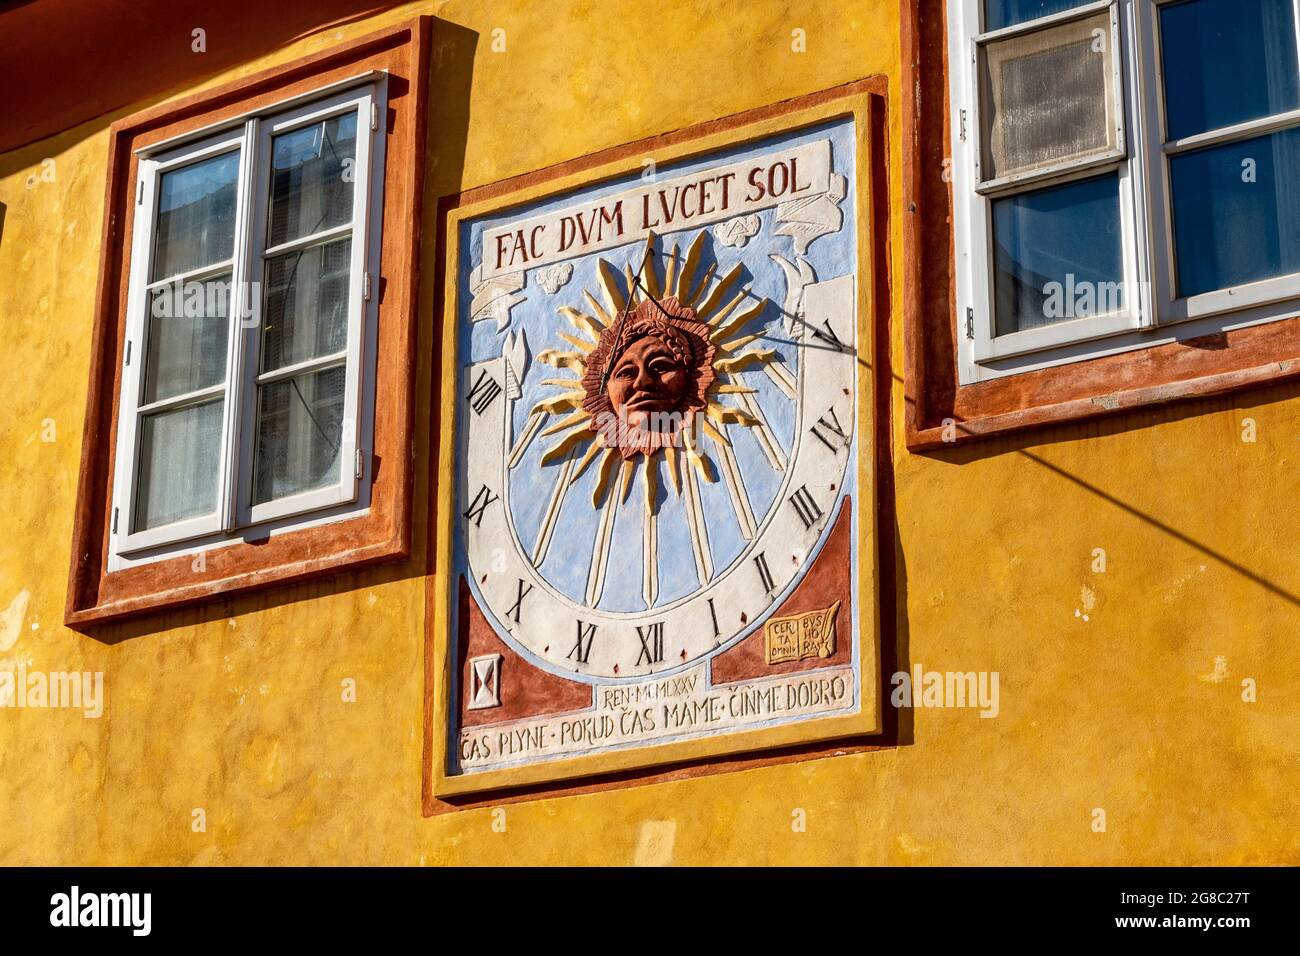 Cadran solaire vintage avec inscription latine (fac dum lucet sol) sur la façade d'une ancienne maison, Kolin, République tchèque, Europe Banque D'Images